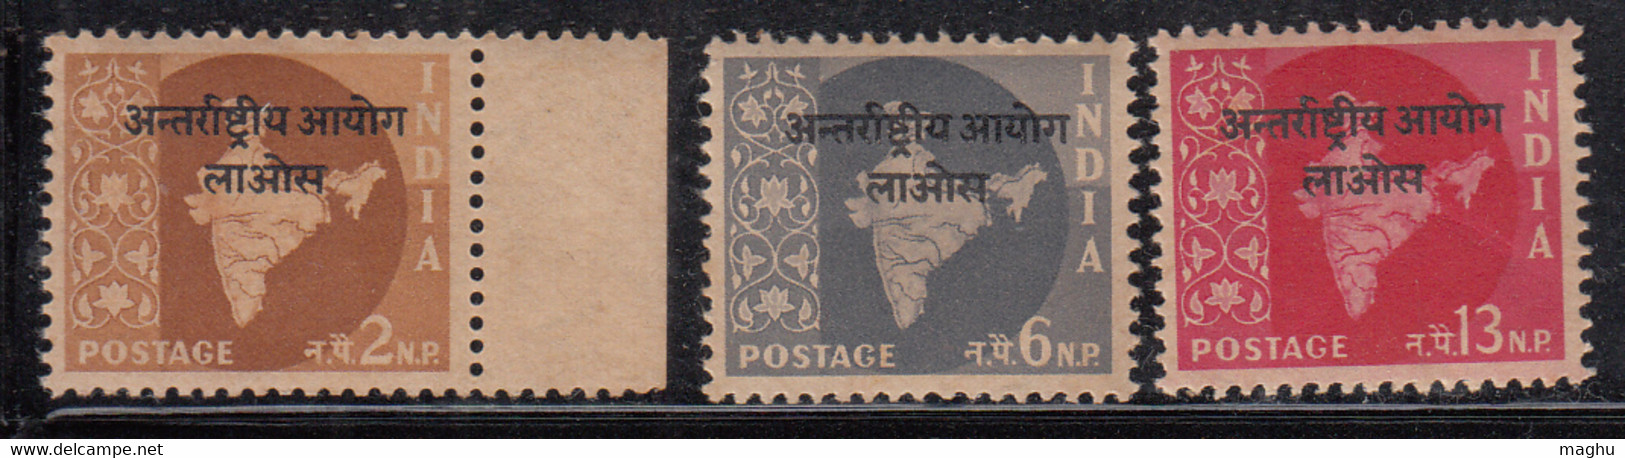 Star Watermark Series, Laos Opt. On 3v Map, India MNH 1957 - Militärpostmarken